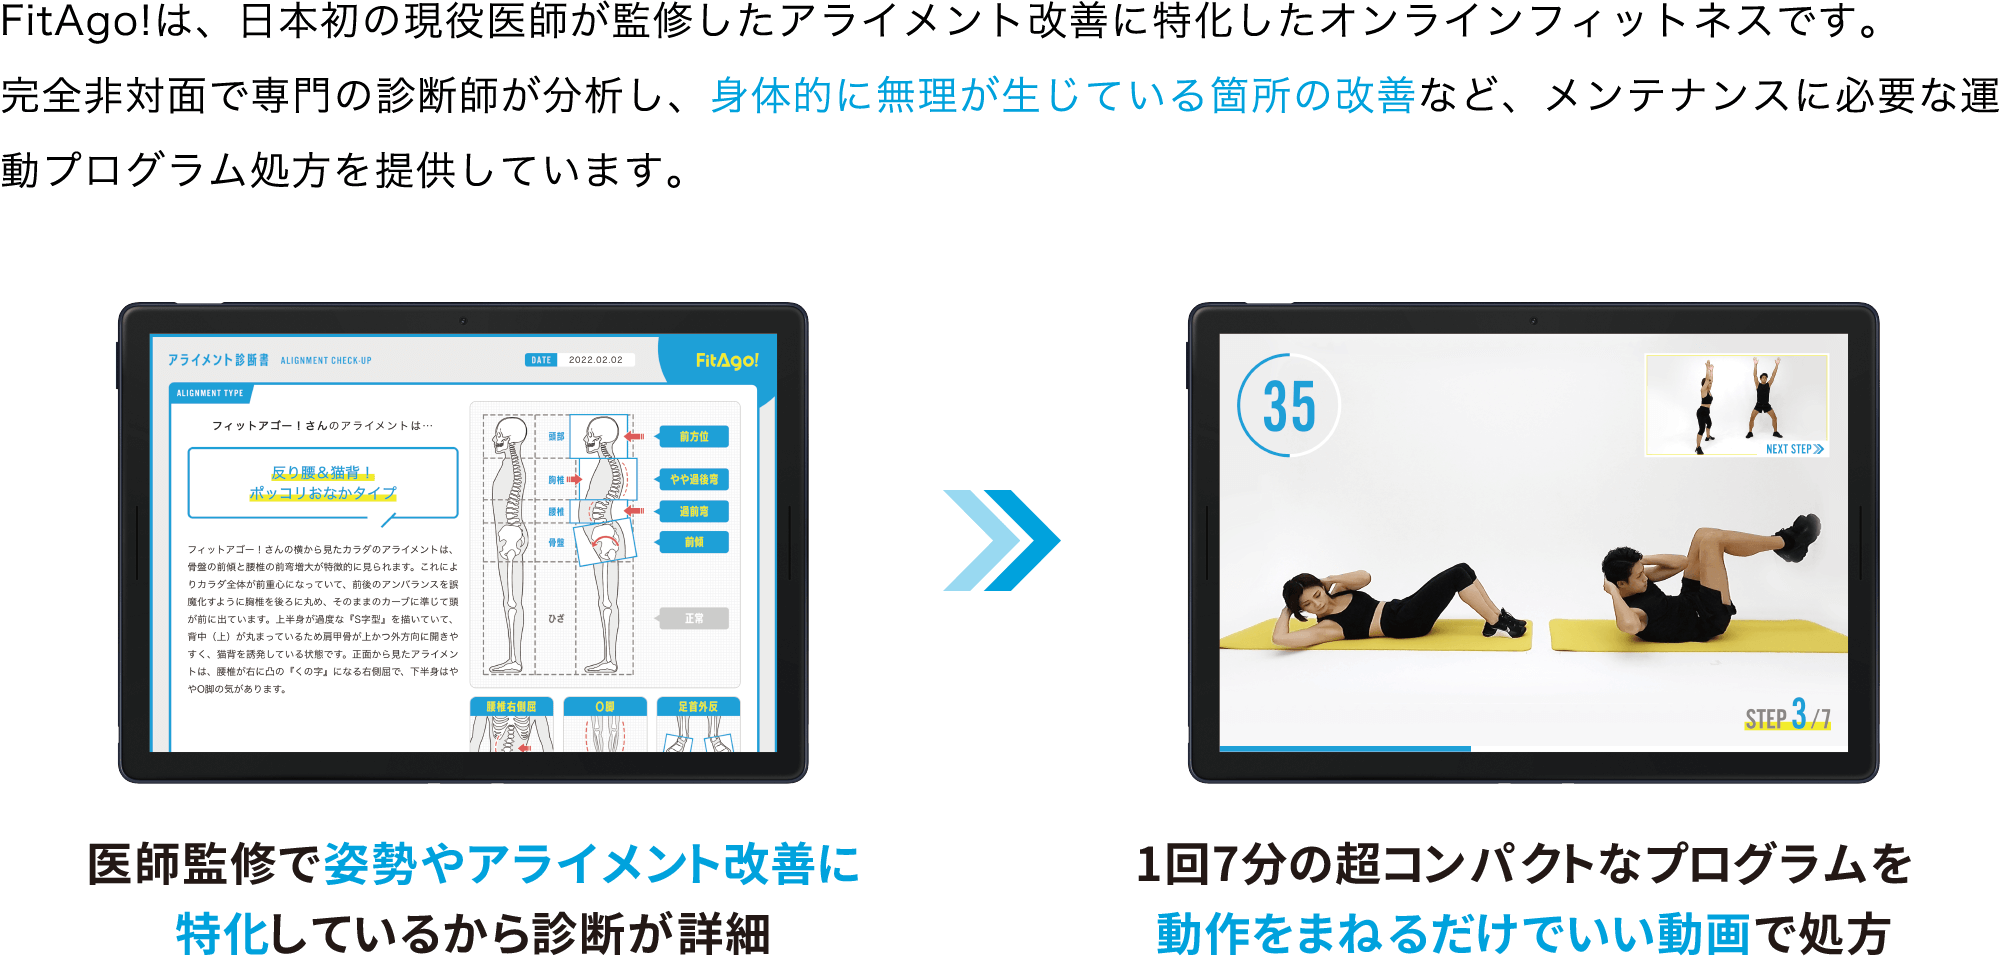 FitAgo!は、日本初の現役医師が監修したアライメント改善に特化したオンラインフィットネスです。完全非対面で専門の診断師が分析し、身体的に無理が生じている箇所の改善など、メンテナンスに必要な運動プログラム処方を提供しています。